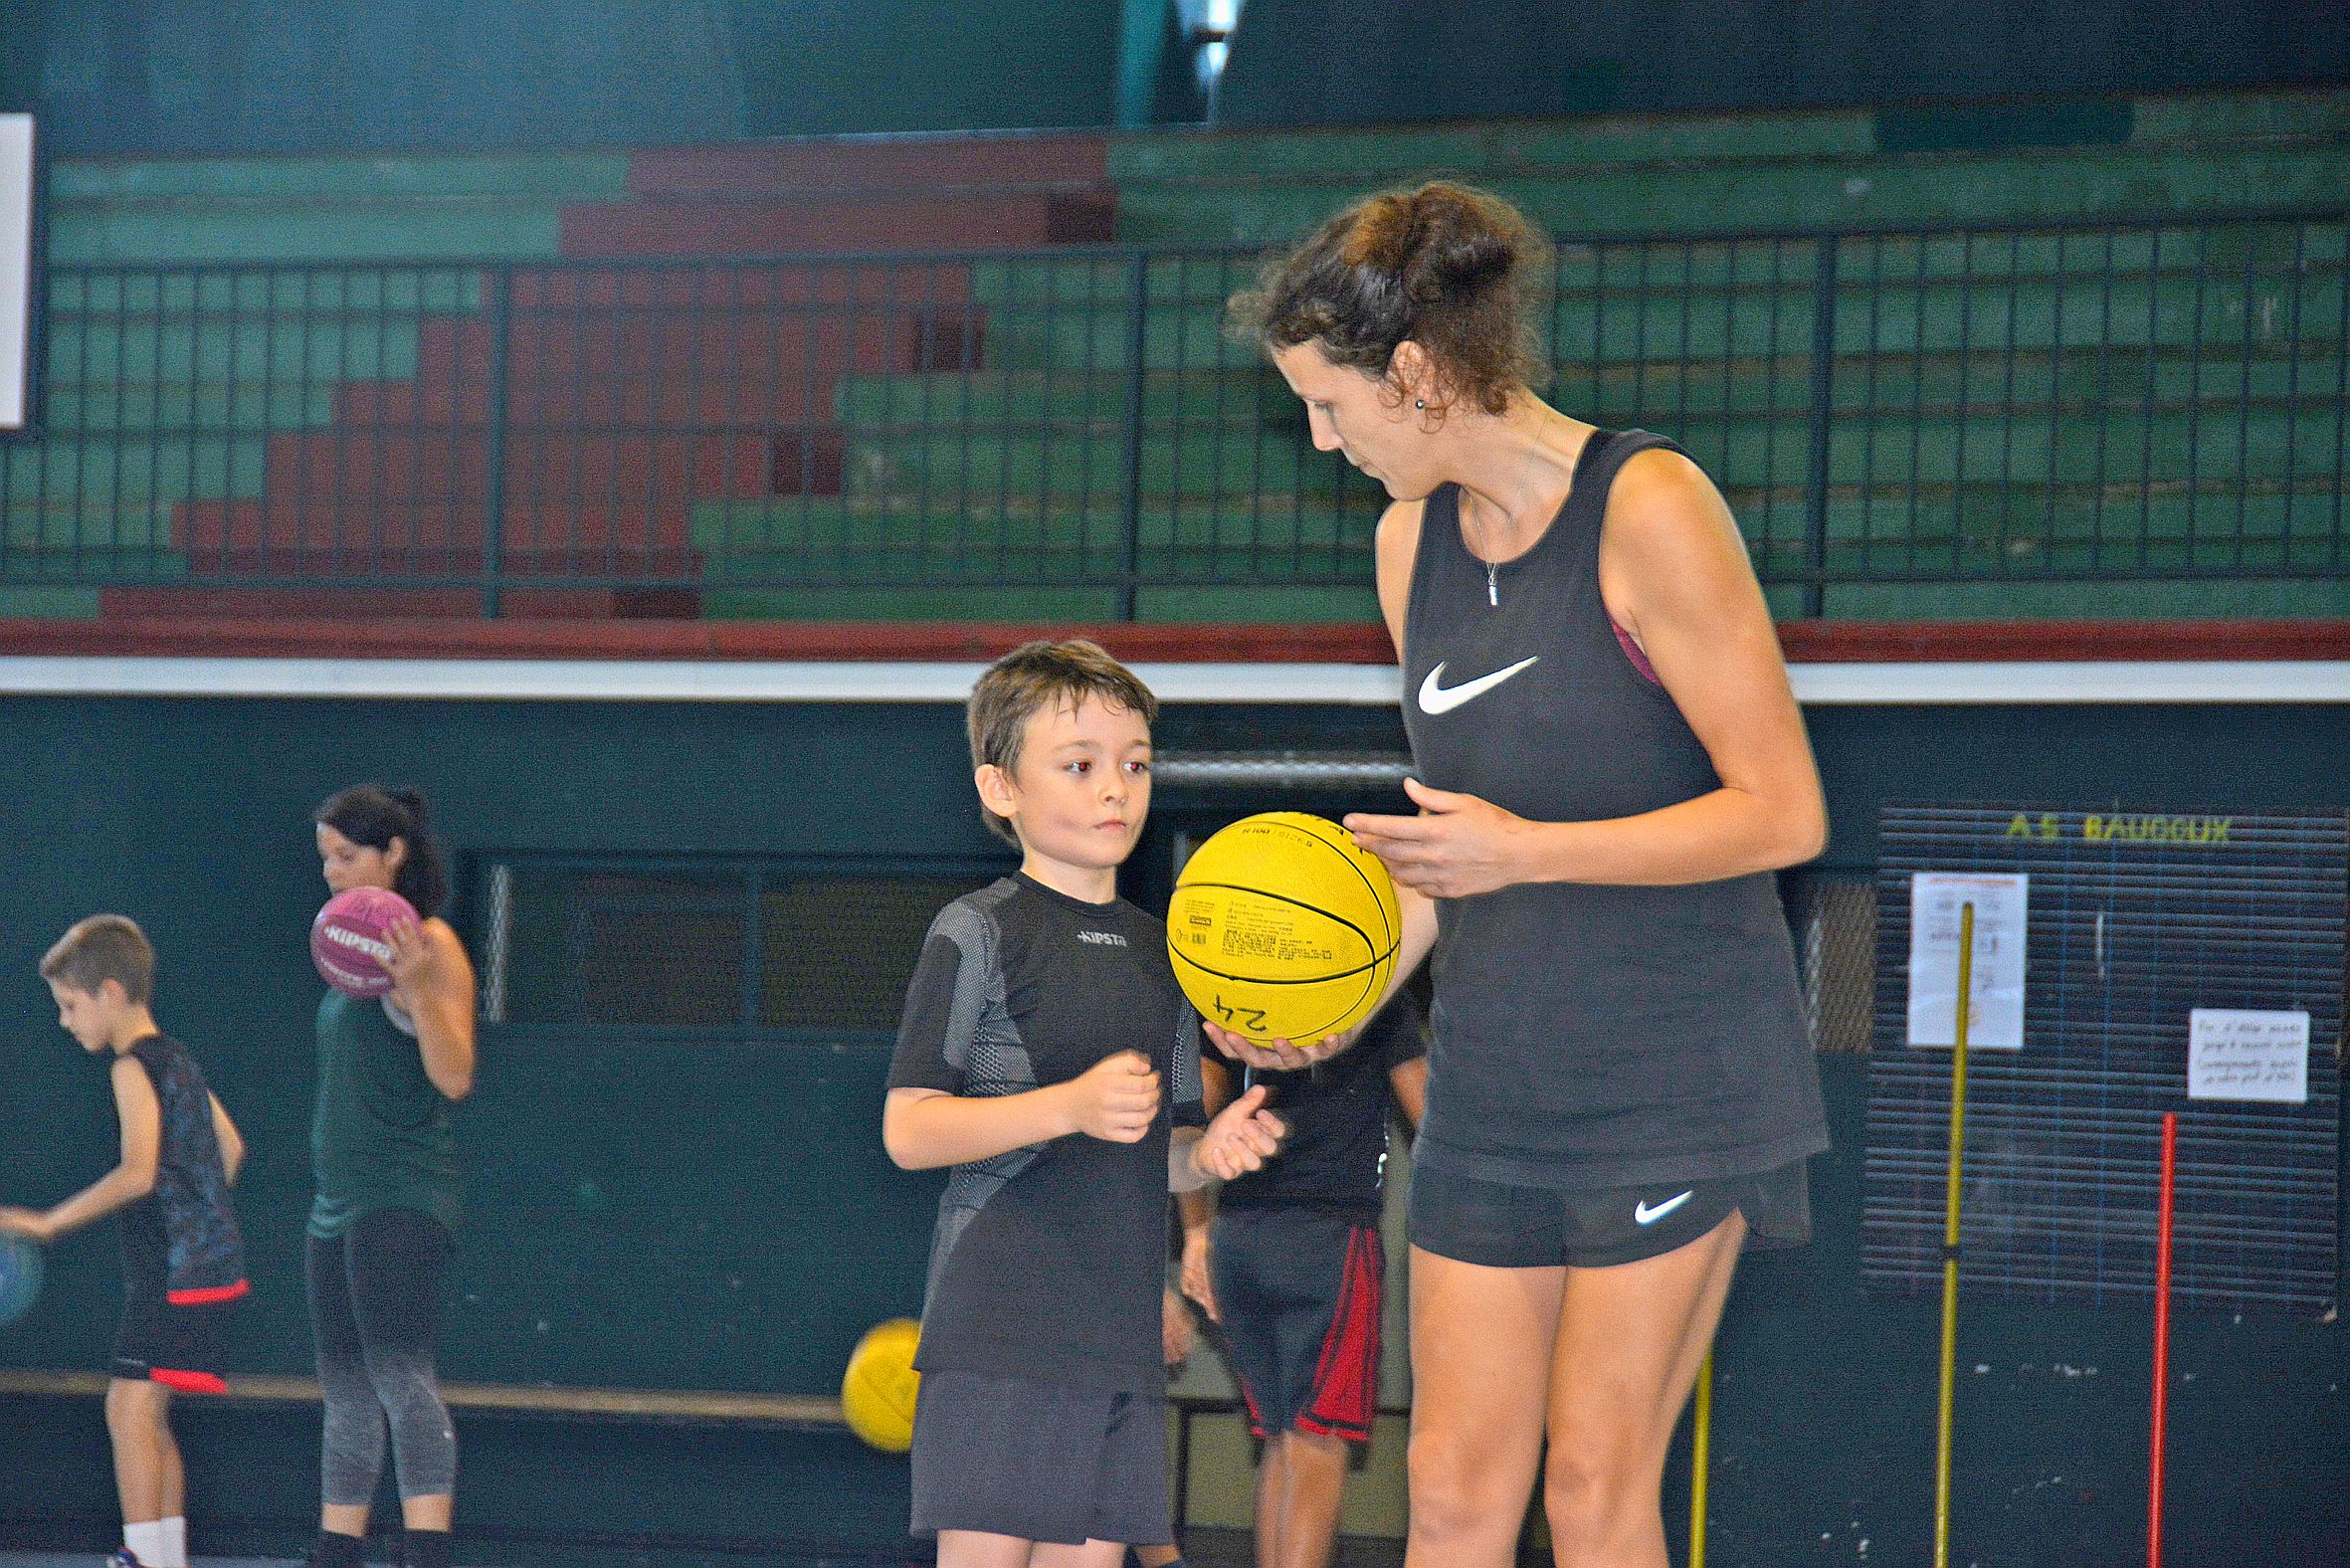 Au début de l'entraînement, chaque jeune reçoit un ballon numéroté afin de limiter les échanges entre joueurs. Photo C.G.